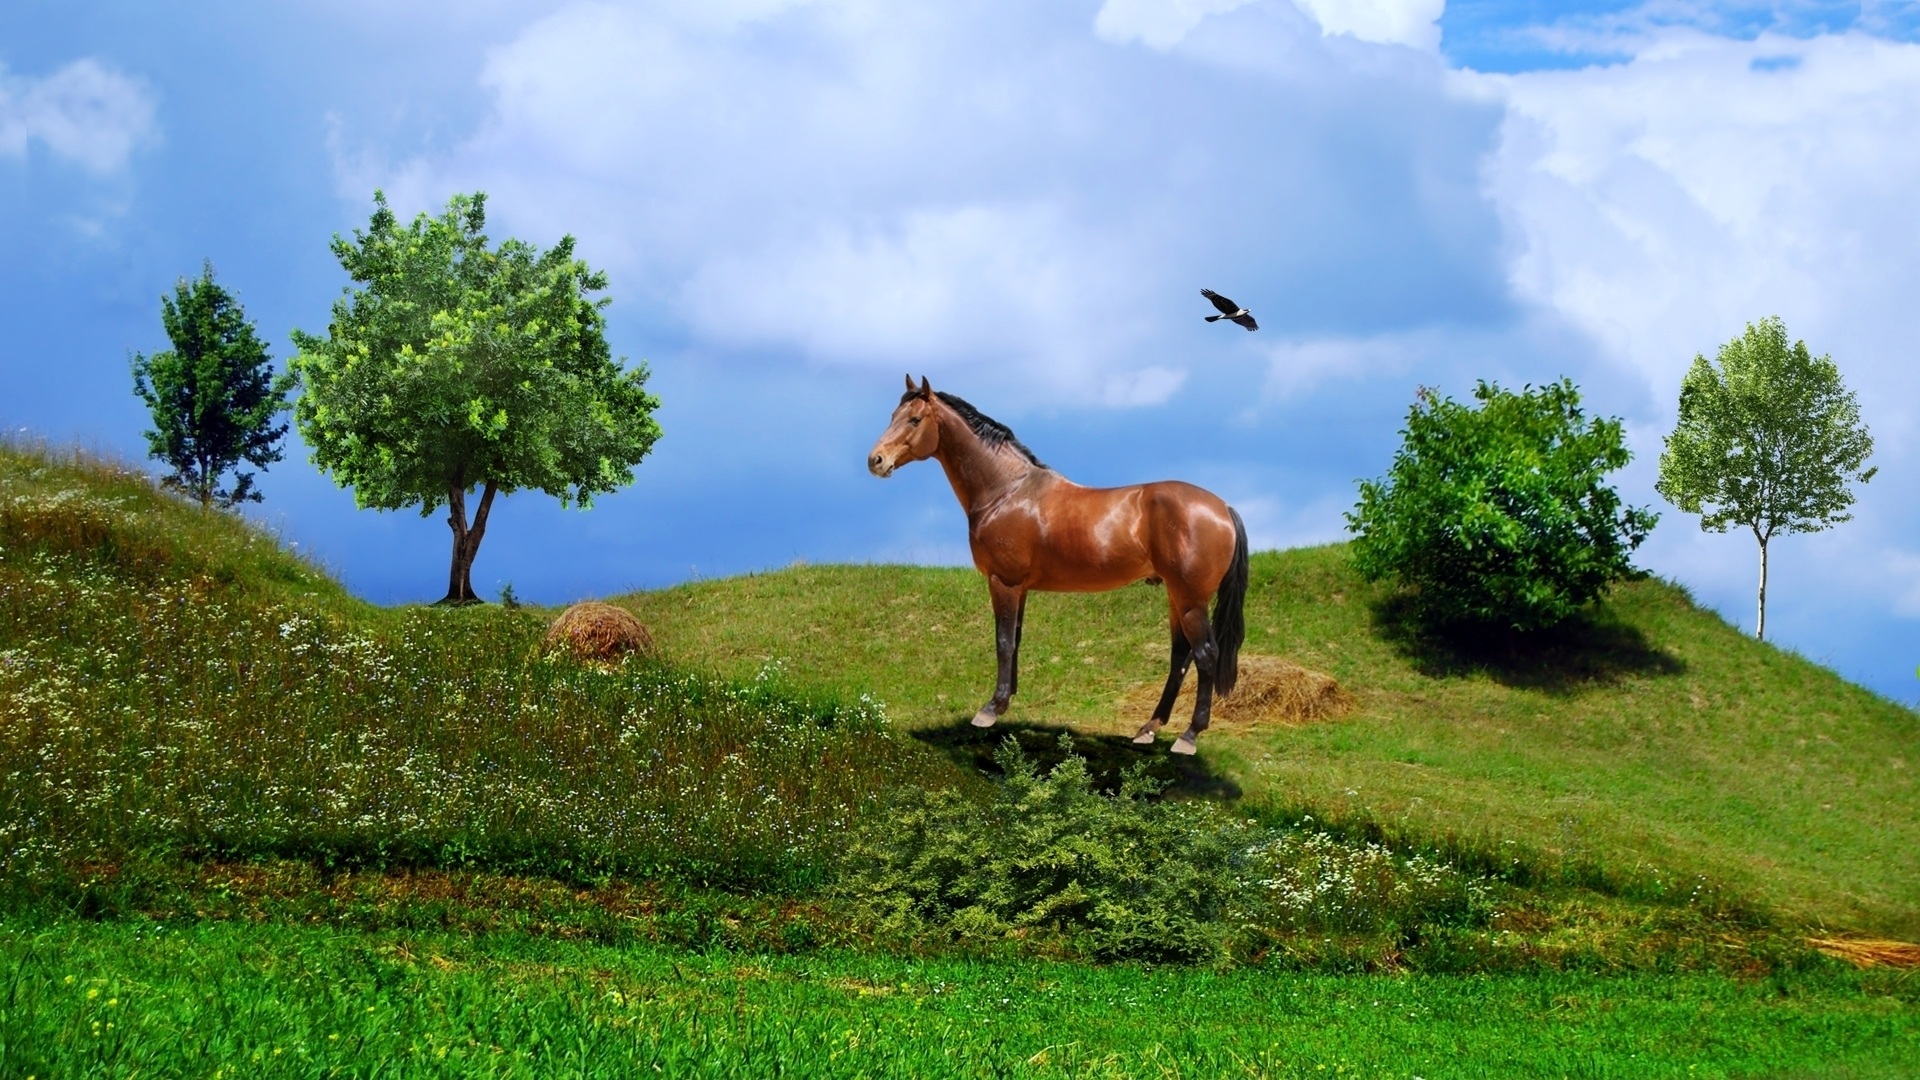 horse-bird-arara-birds-trees-vegetation-field